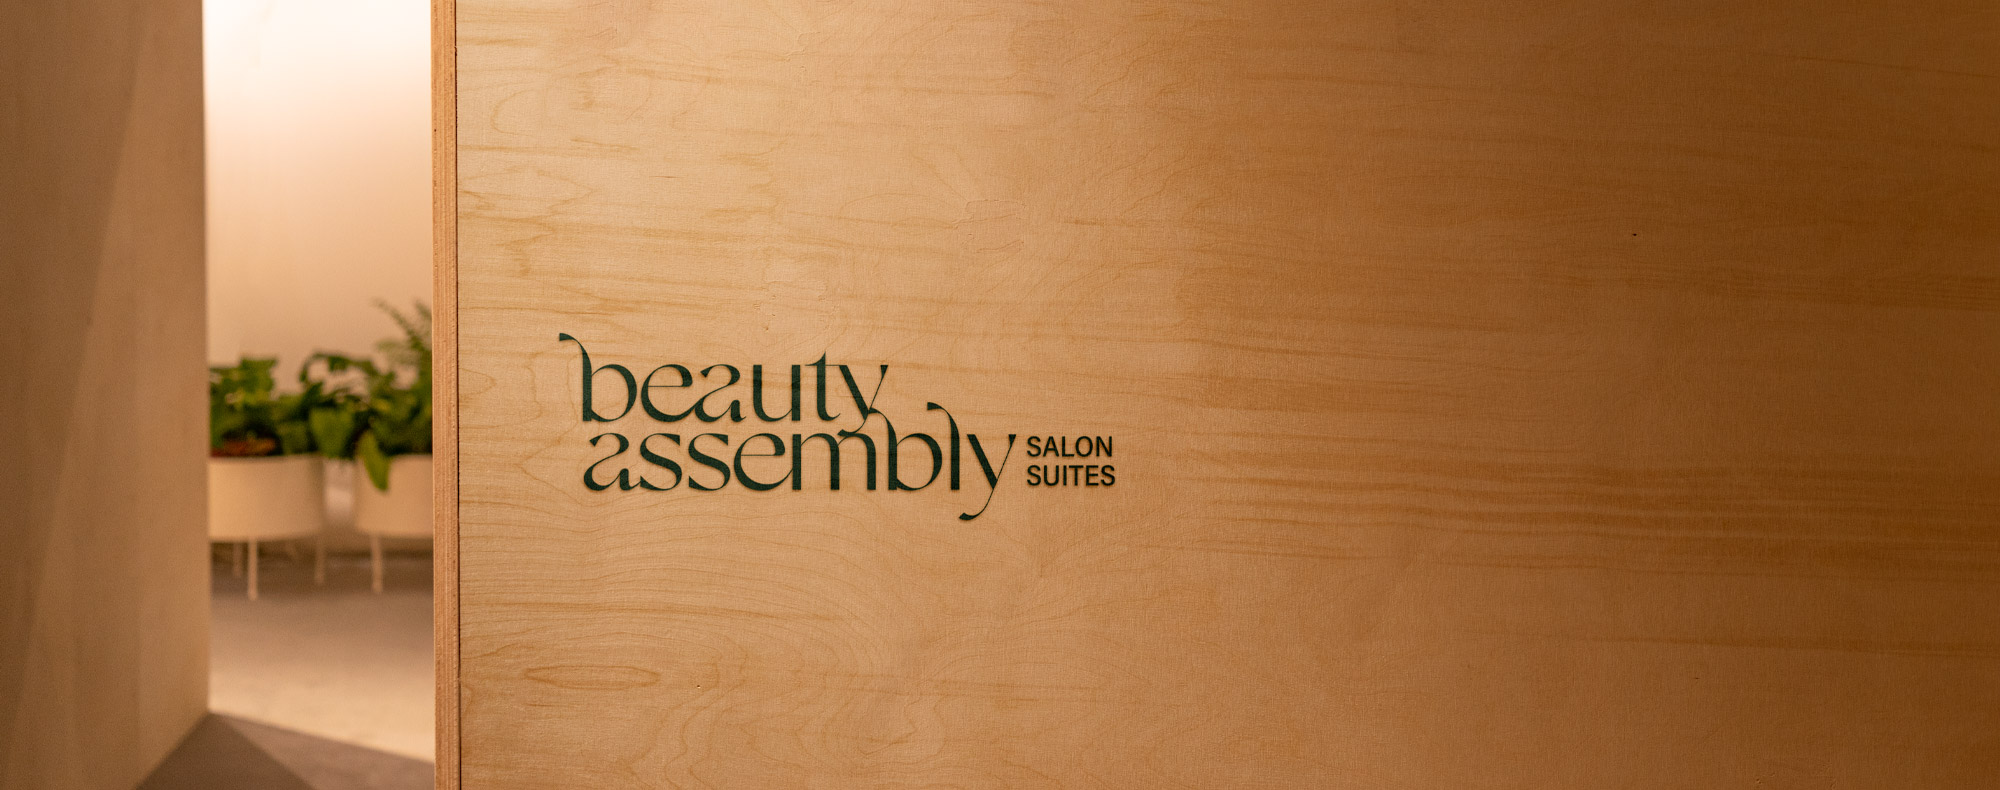 https://zestybrands.ca/wp-content/uploads/2022/11/branding-agency-vancouver-zesty-brands-salon-design-beauty-assembly.jpg